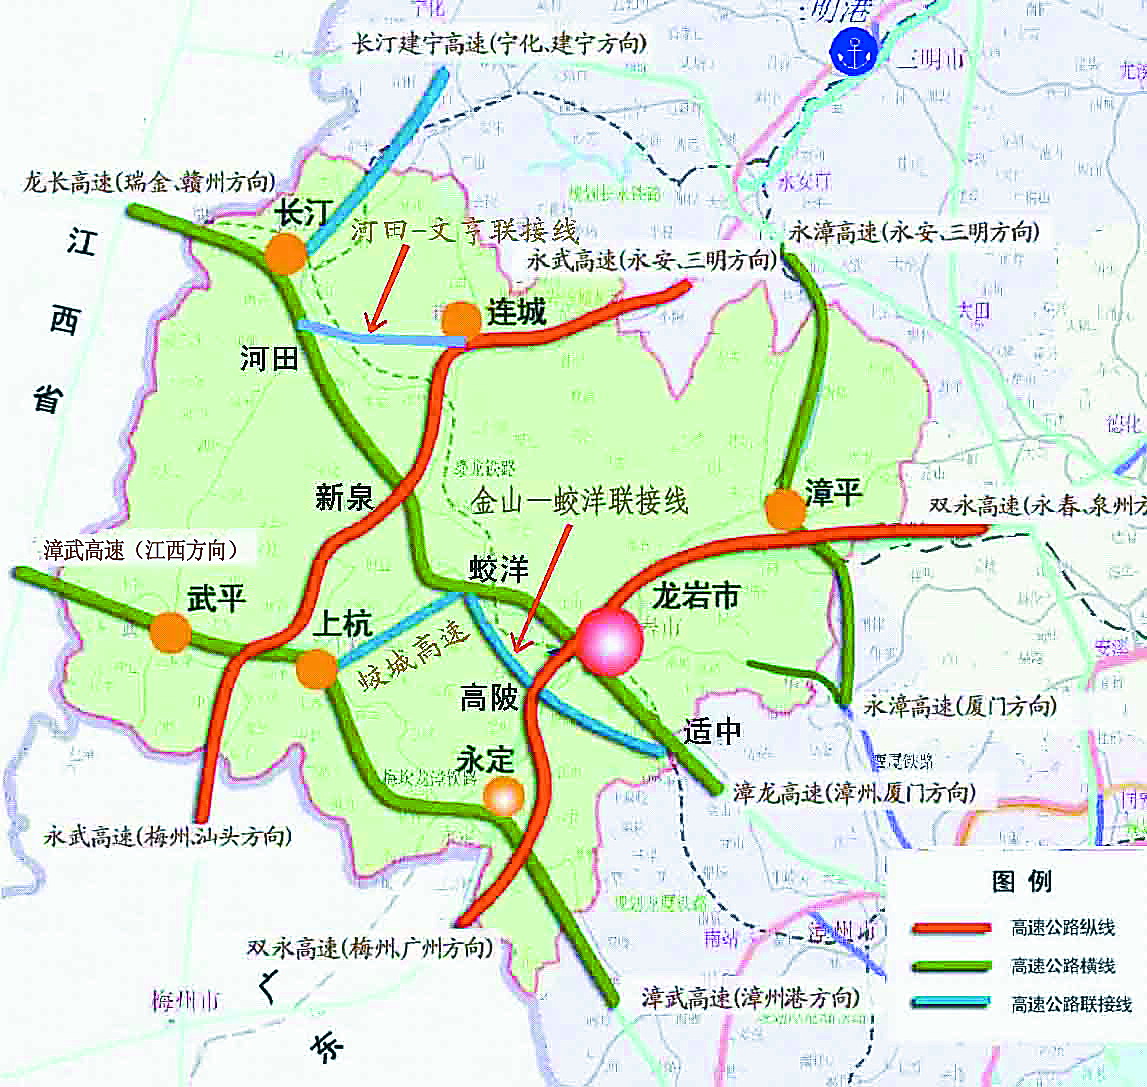 漳武高速永定区段项目公示线路设计欠合理图片